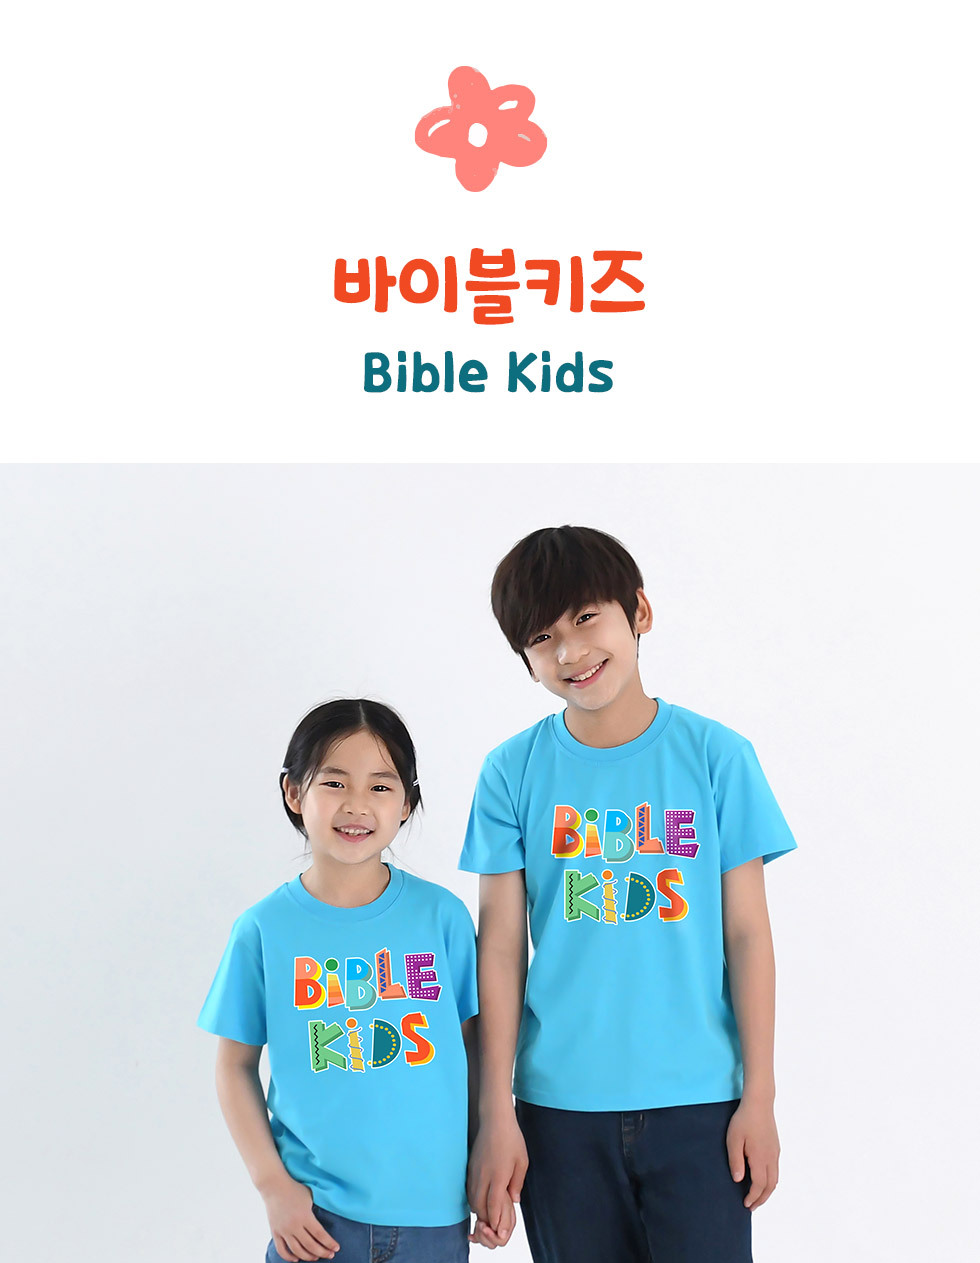 말씀을 품은 어린이, bible kids - 아동티셔츠(바이블키즈) 디자인 소개